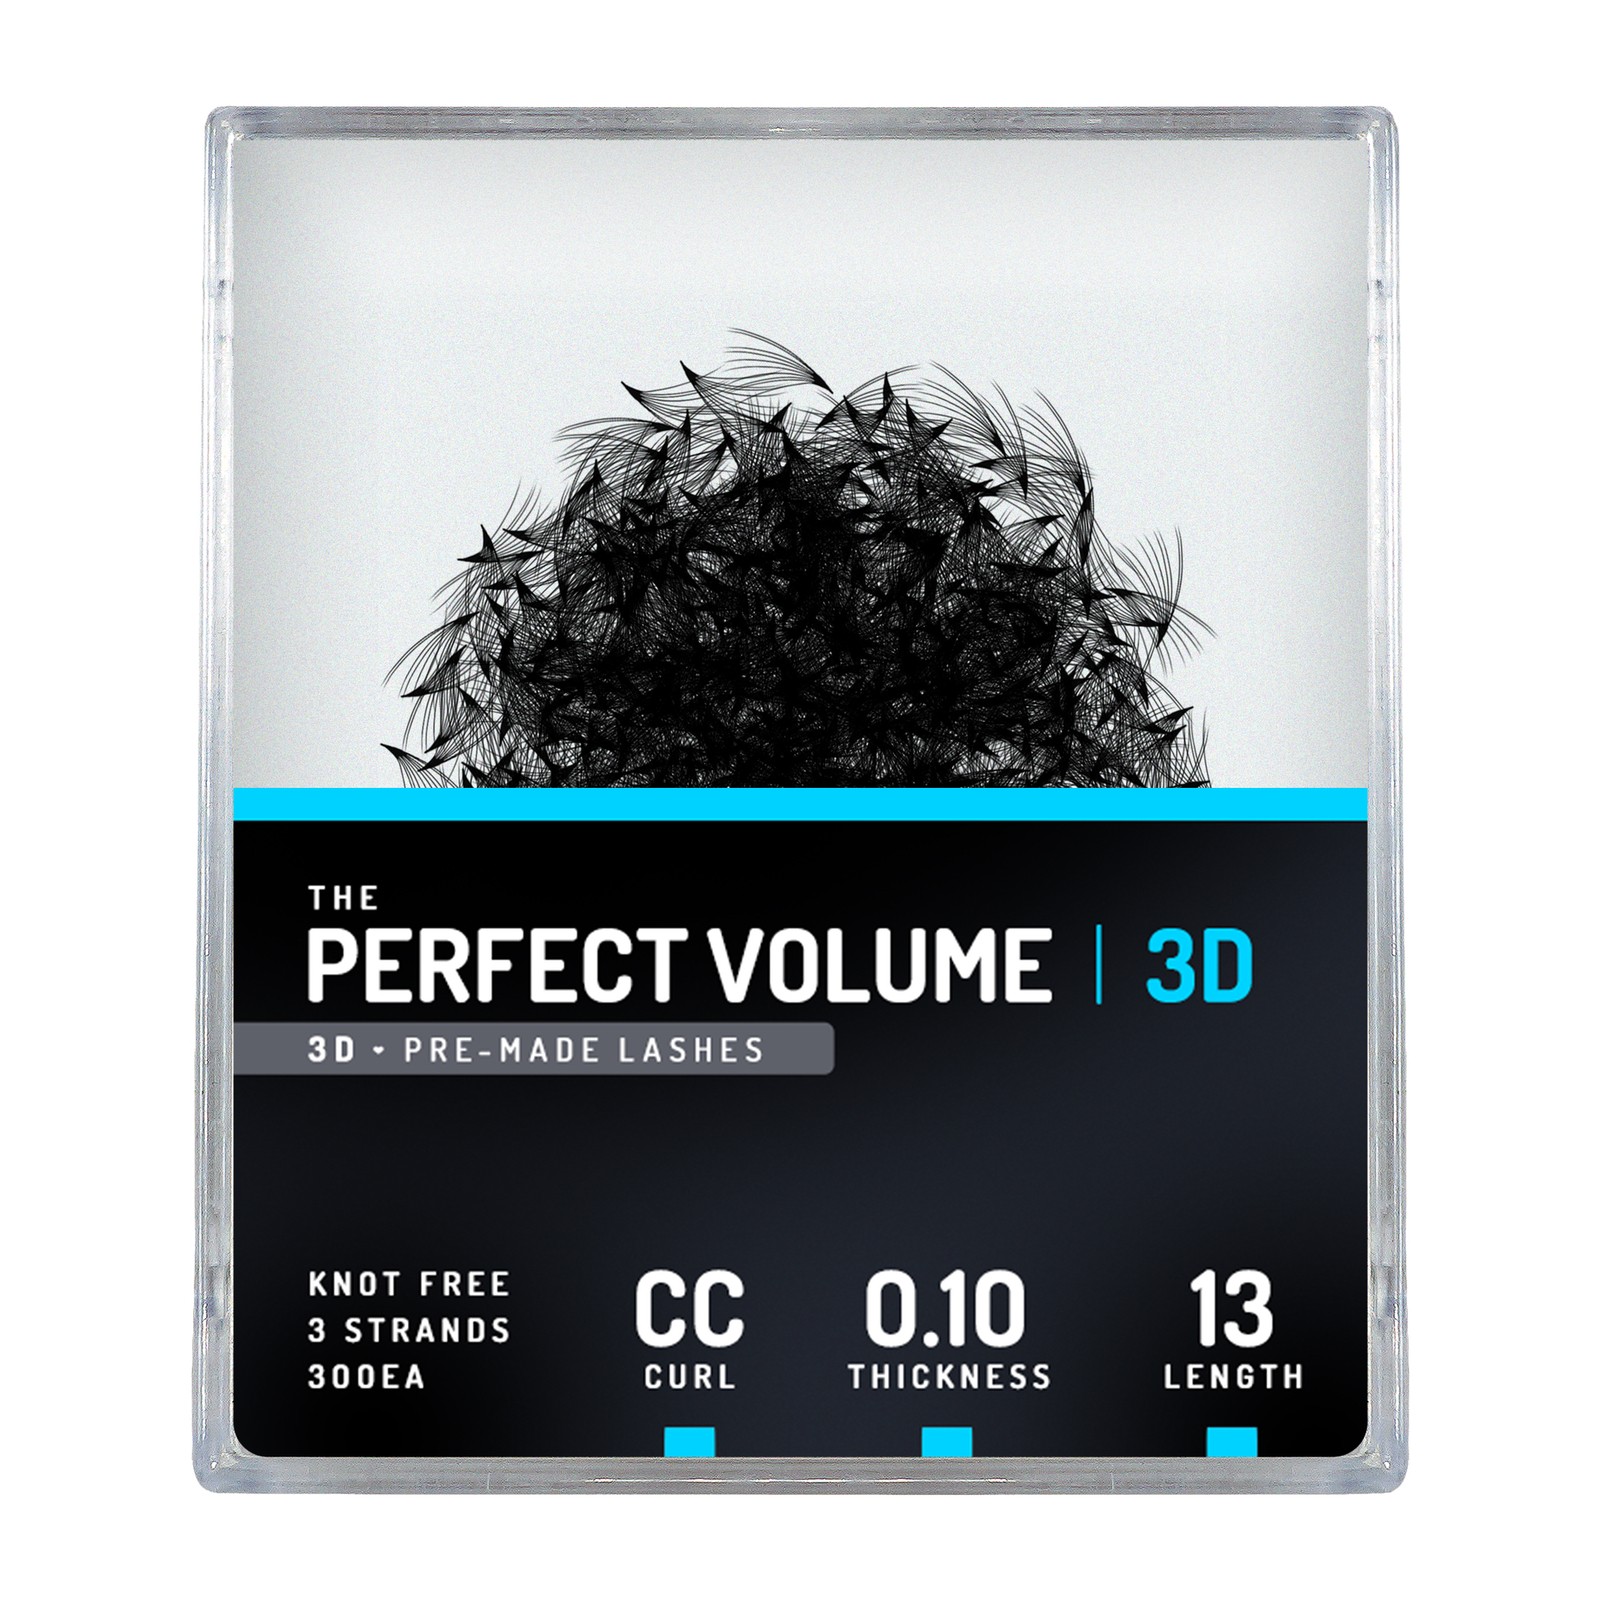 Volume parfait -  300 buchesele premade 3D -  13mm, CC, 0.10mm